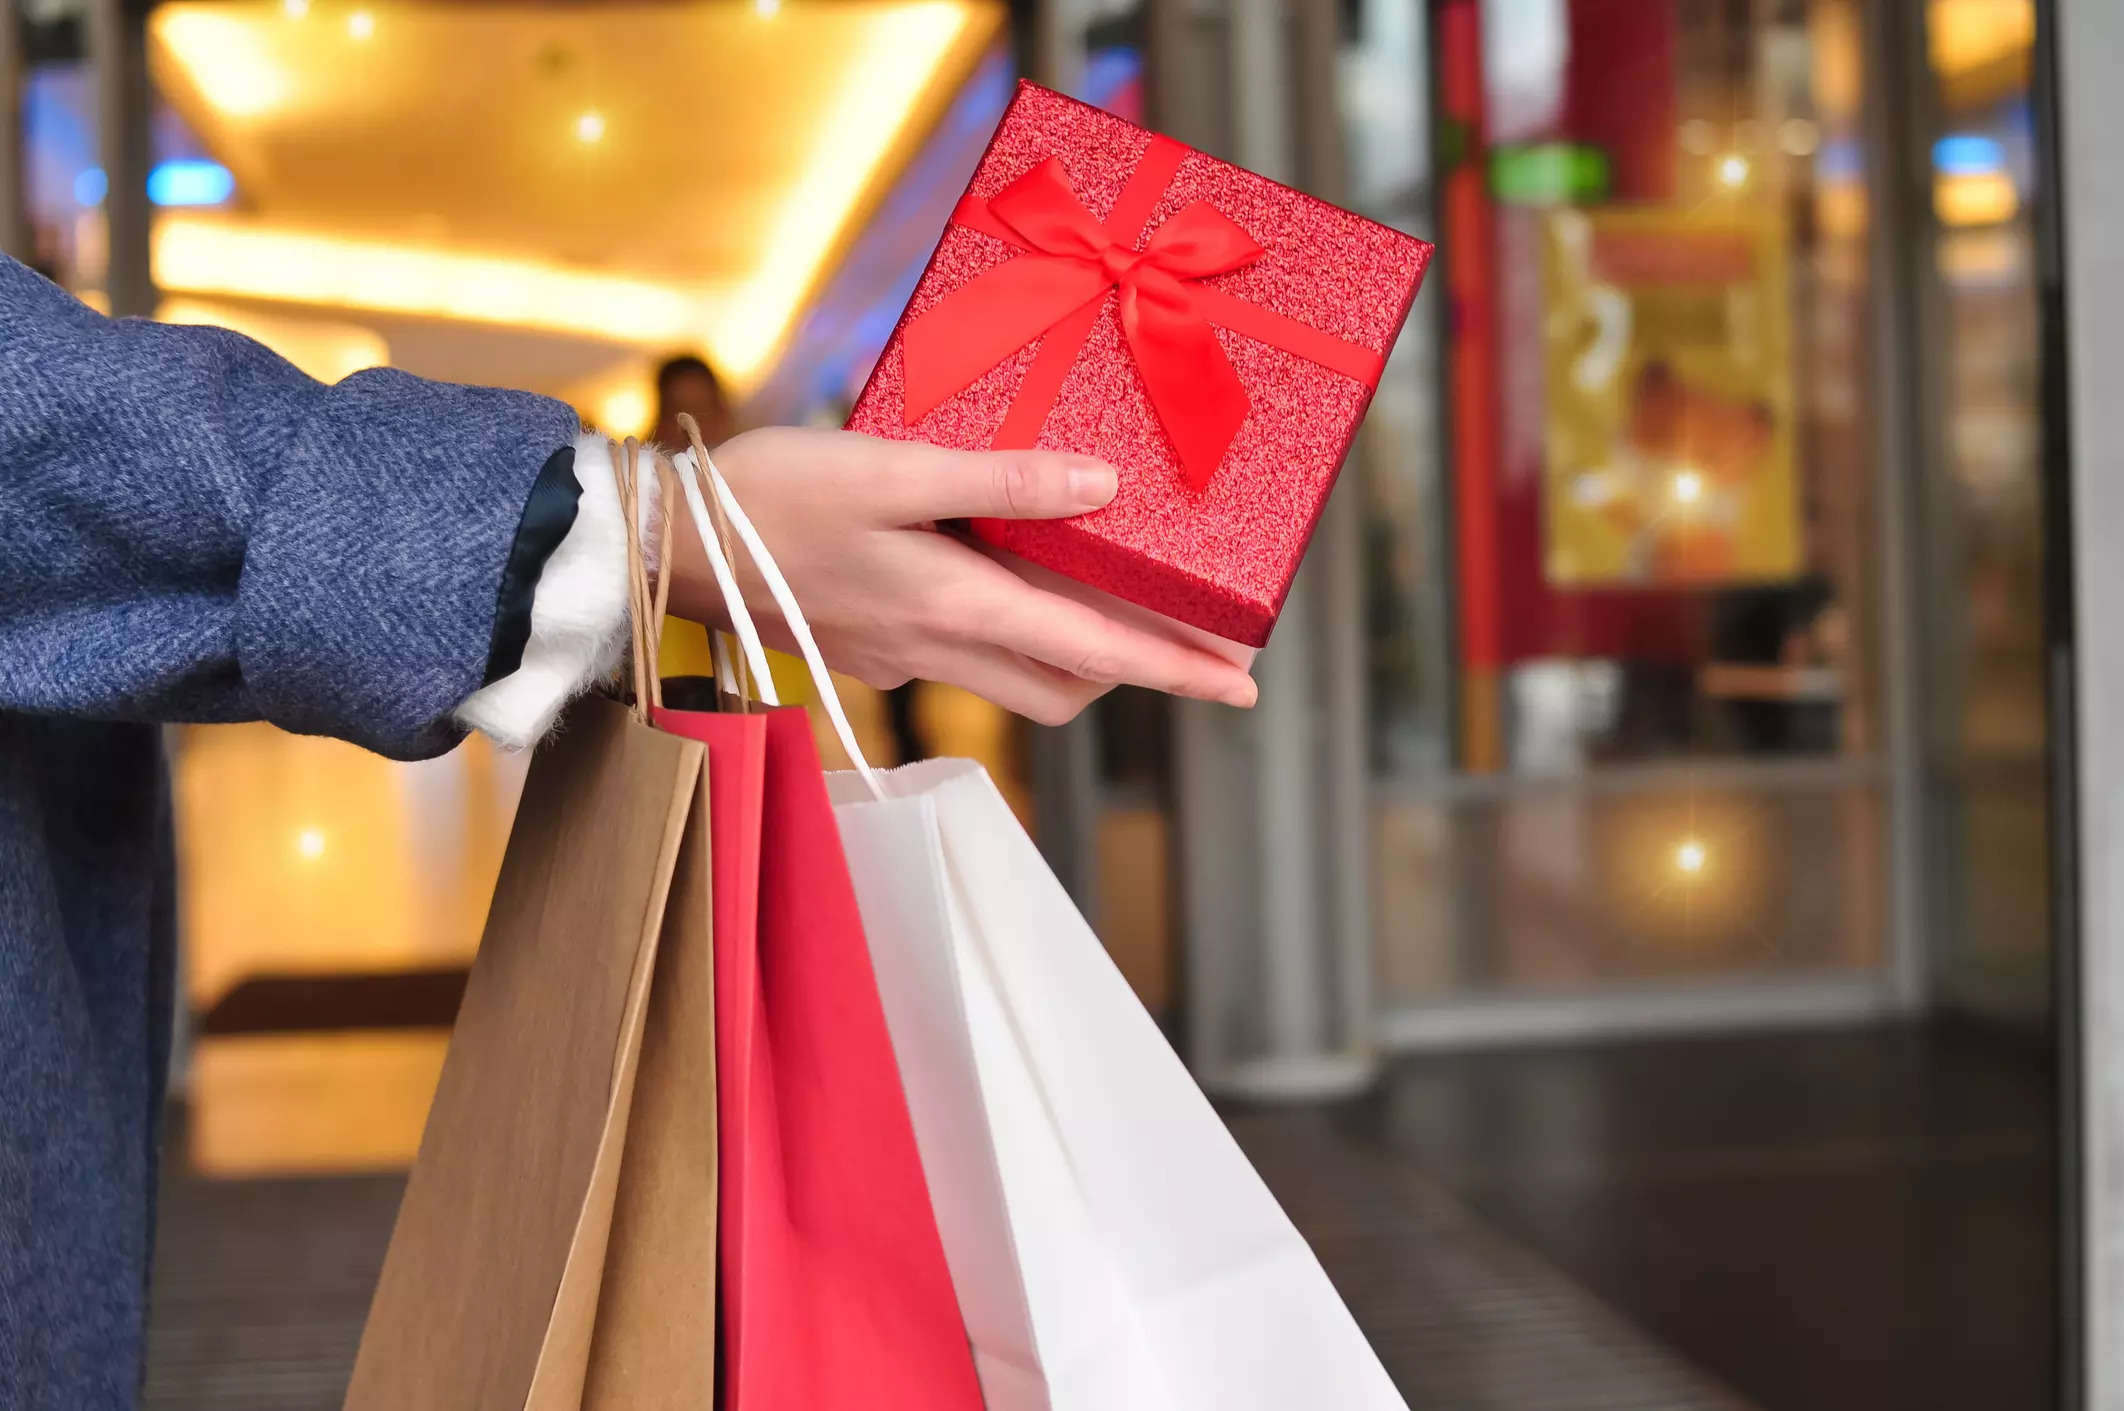 Retail sales grow 15% in Nov over pre-pandemic level; wedding season leads to spike in jewellery, footwear sales